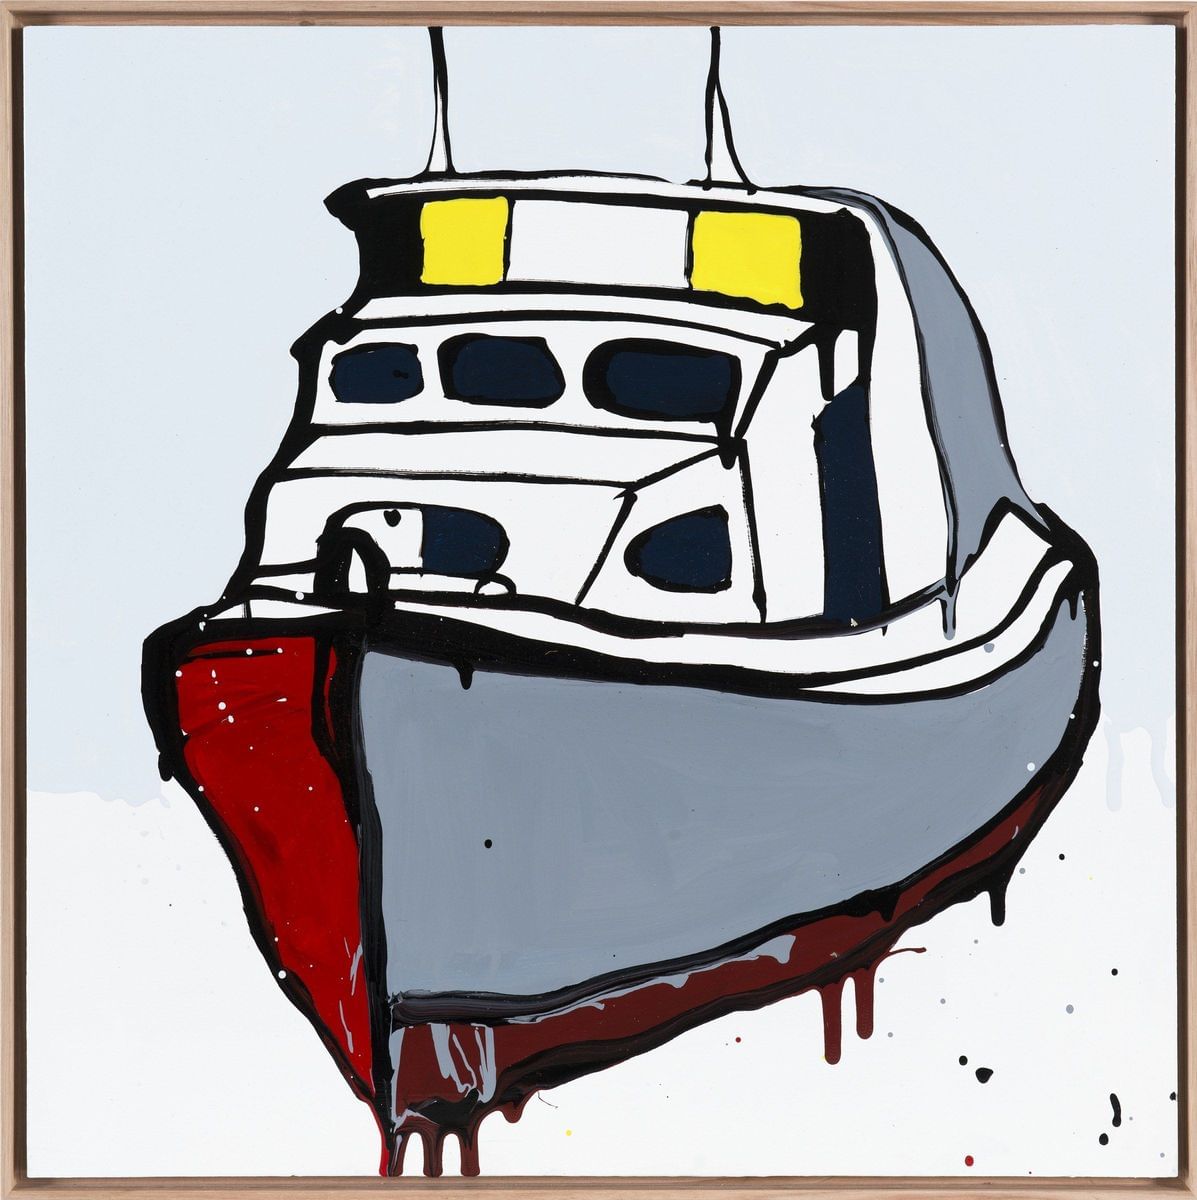 Broken Jetty Boat, Manly by Jasper Knight